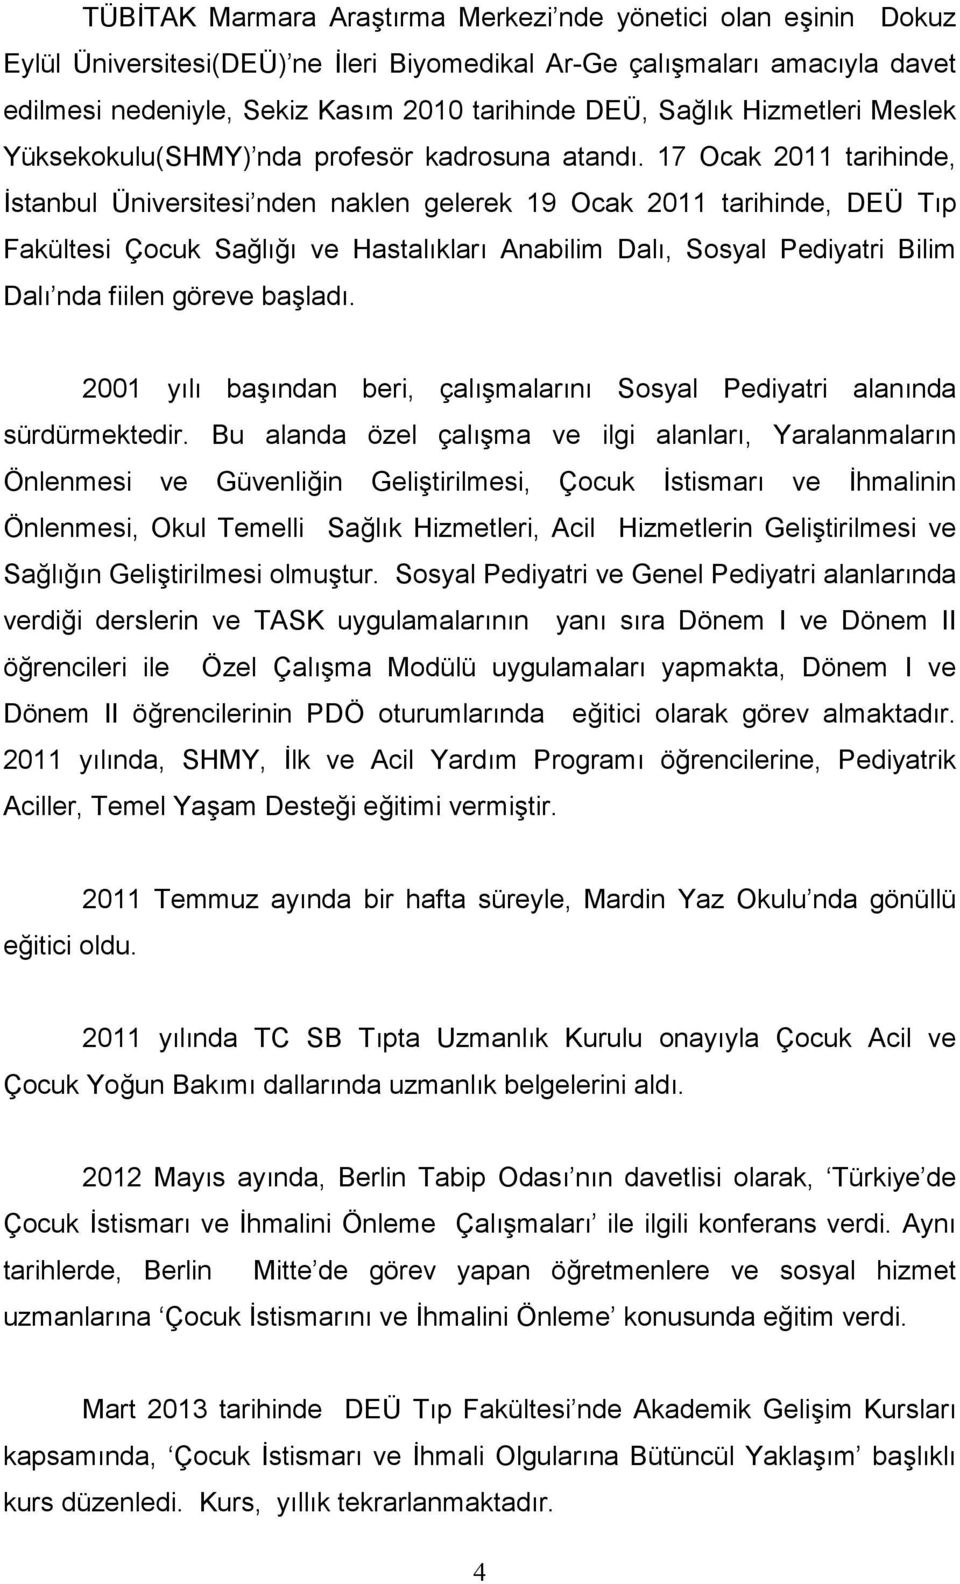 17 Ocak 2011 tarihinde, İstanbul Üniversitesi nden naklen gelerek 19 Ocak 2011 tarihinde, DEÜ Tıp Fakültesi Çocuk Sağlığı ve Hastalıkları Anabilim Dalı, Sosyal Pediyatri Bilim Dalı nda fiilen göreve